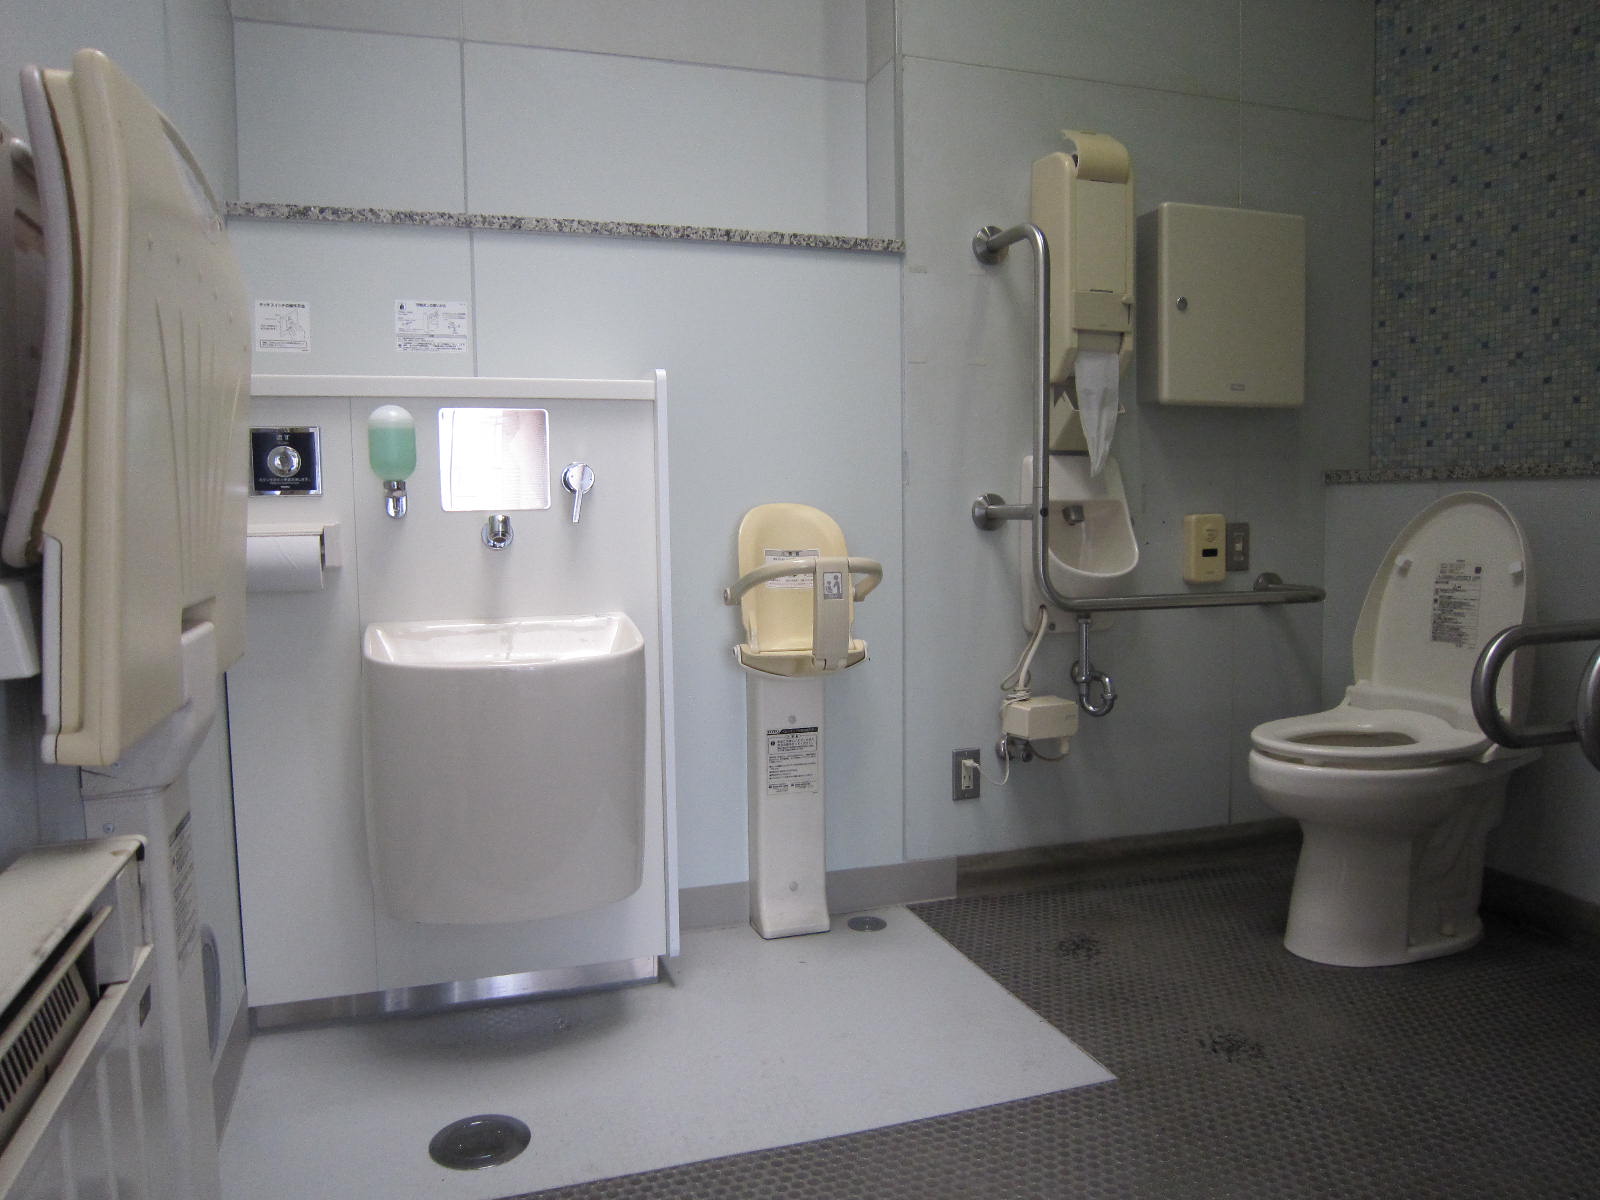 道の駅トイレにオストメイトを設置 秩父観光なび スタッフブログ